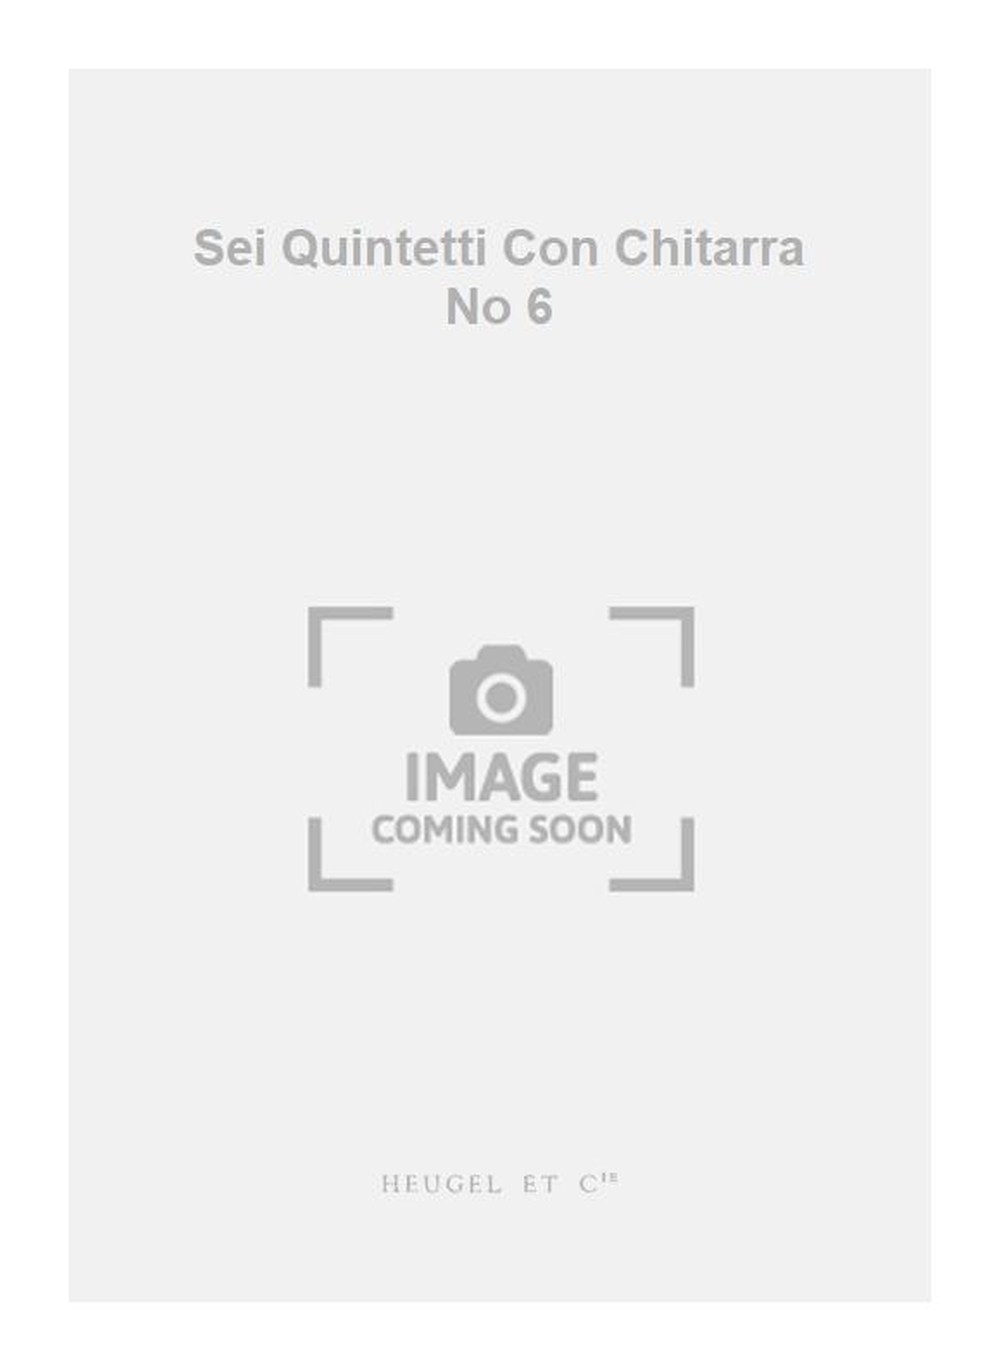 Luigi Boccherini: Sei Quintetti Con Chitarra No 6